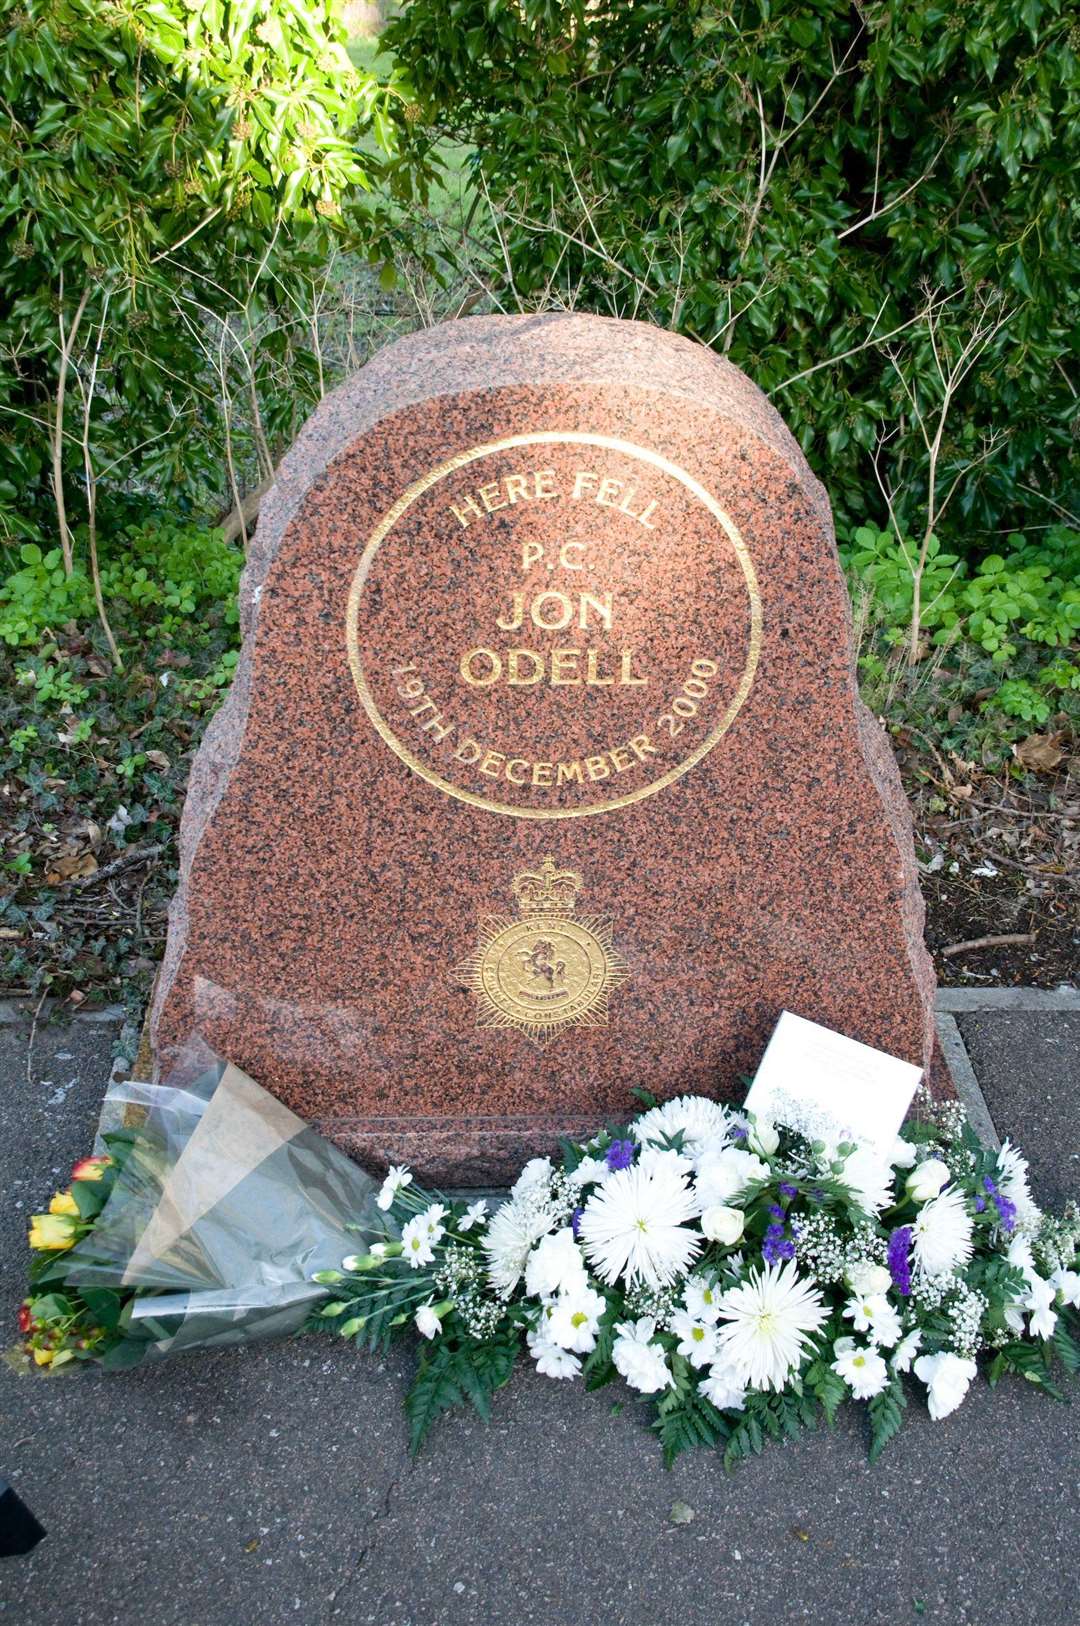 The roadside memorial in Margate for PC Jon Odell